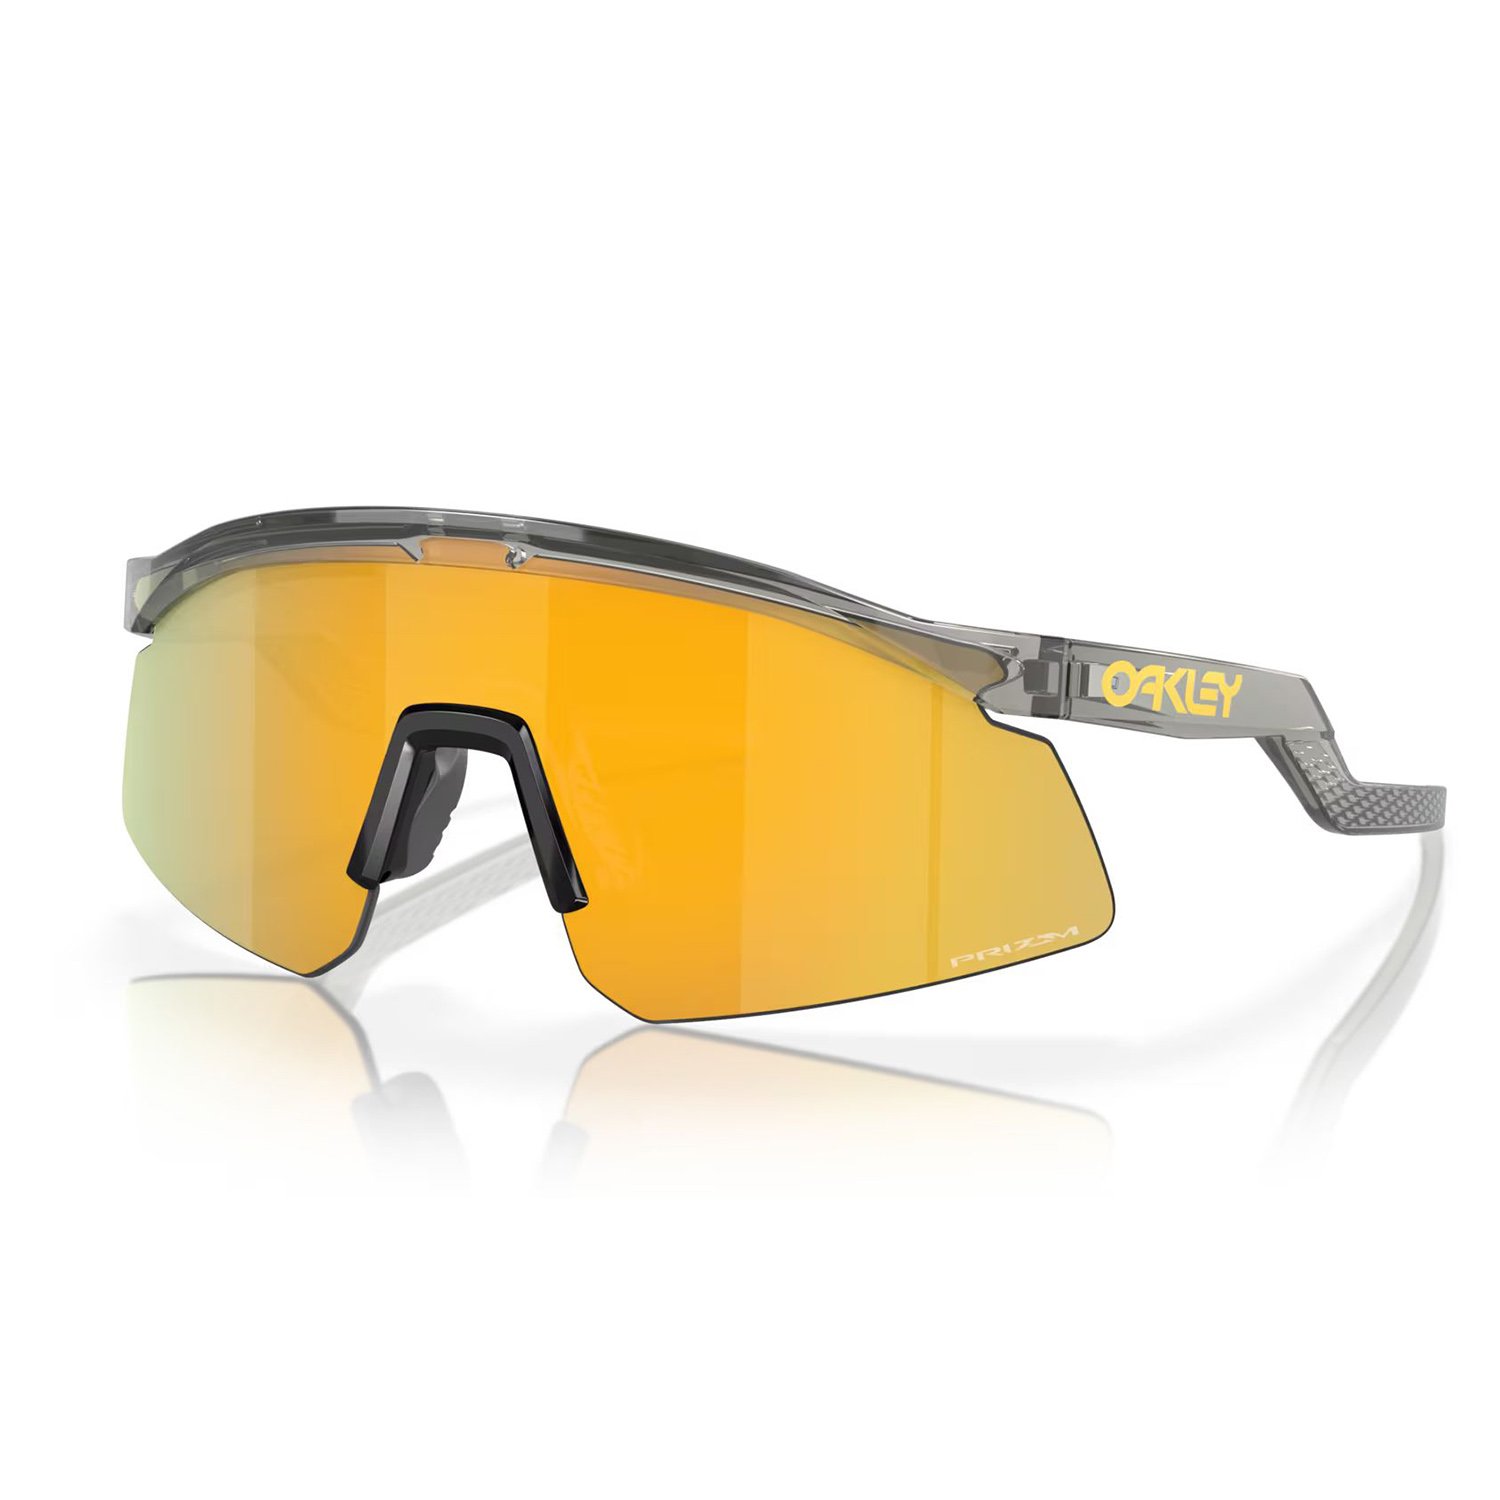 Oakley Hydra Güneş Gözlüğü - Renkli - 1